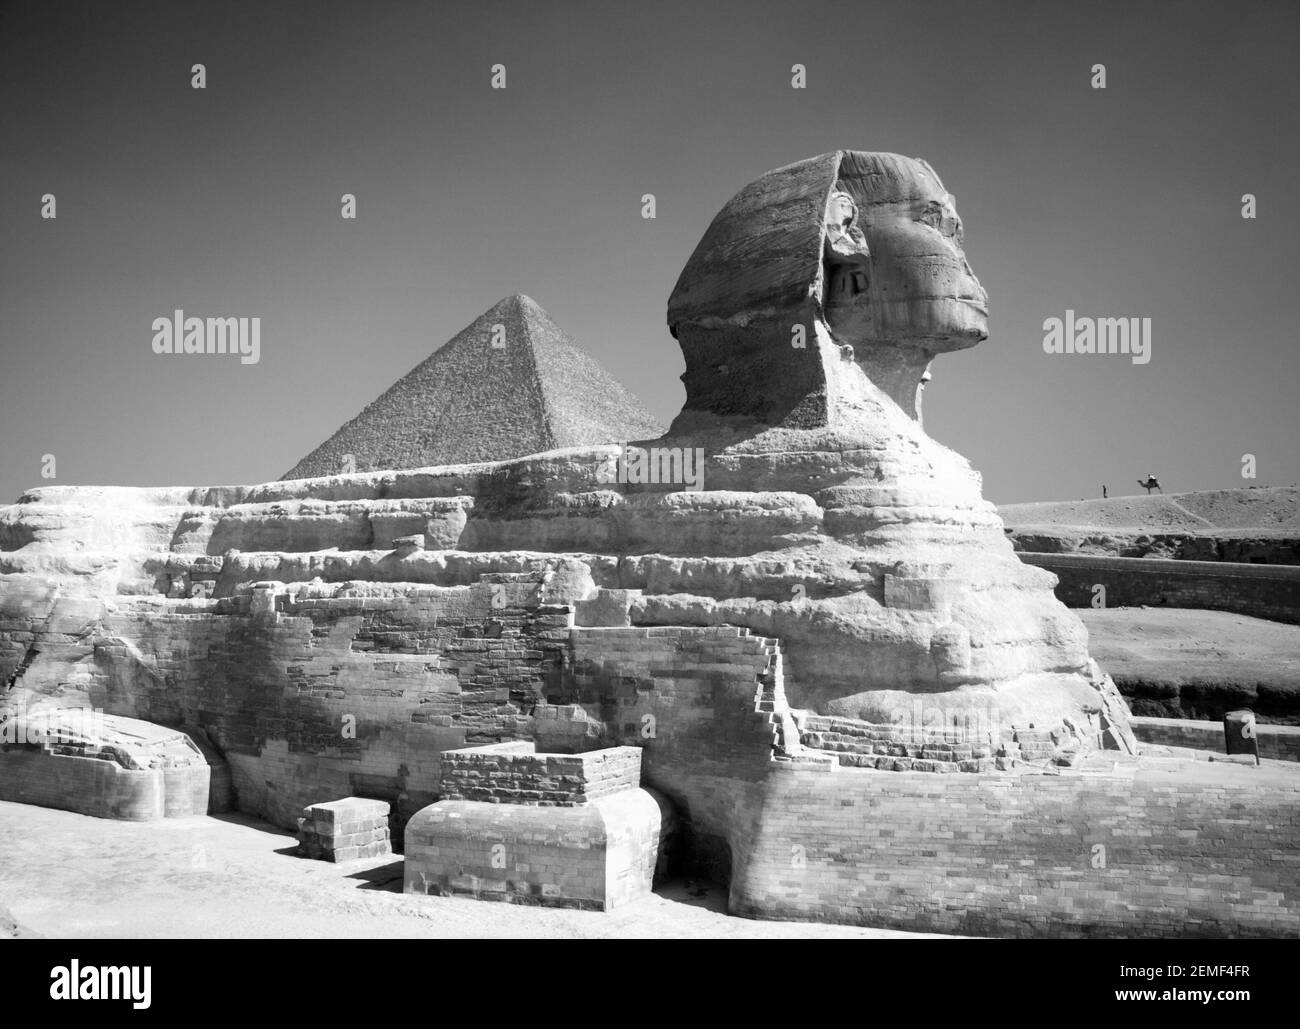 Monochrom, schwarz-weiß, Bild der Großen Sphinx mit der Großen Pyramide von Khufu, Cheops, dahinter. Gizeh, Kairo, Ägypten Stockfoto